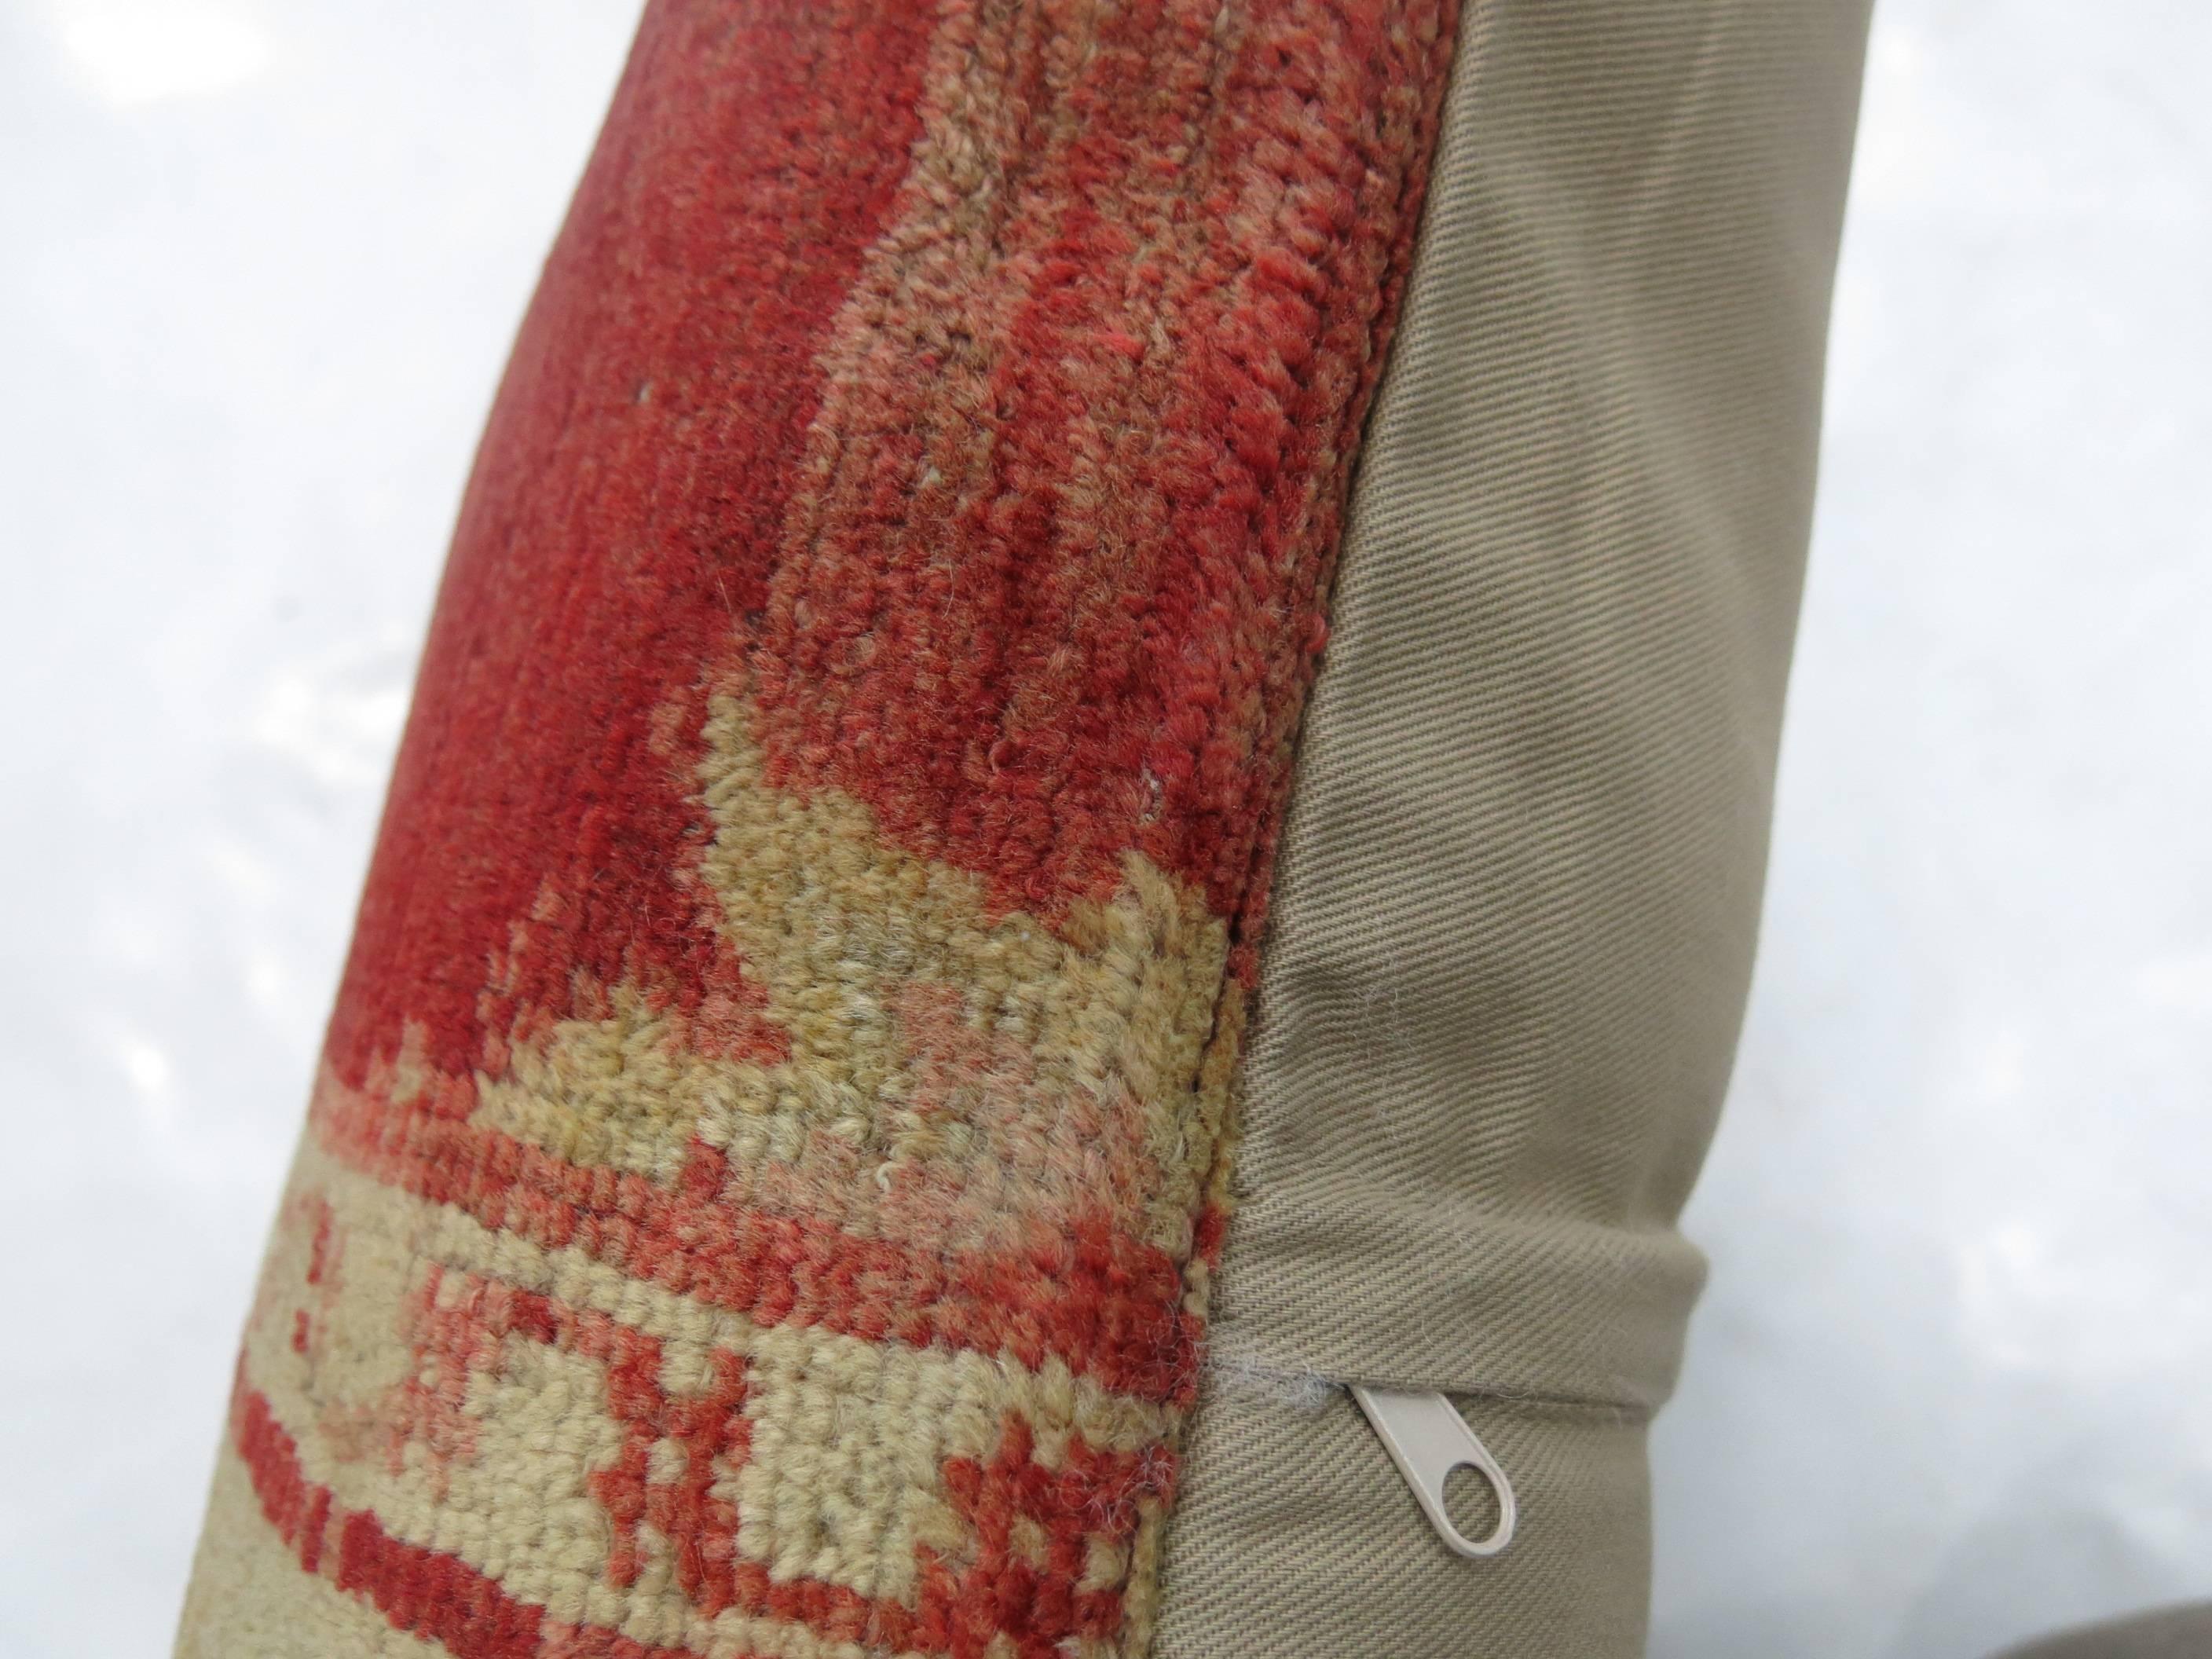 Oreiller fabriqué à partir d'un tapis turc Sivas des années 1920.

Mesures : 17